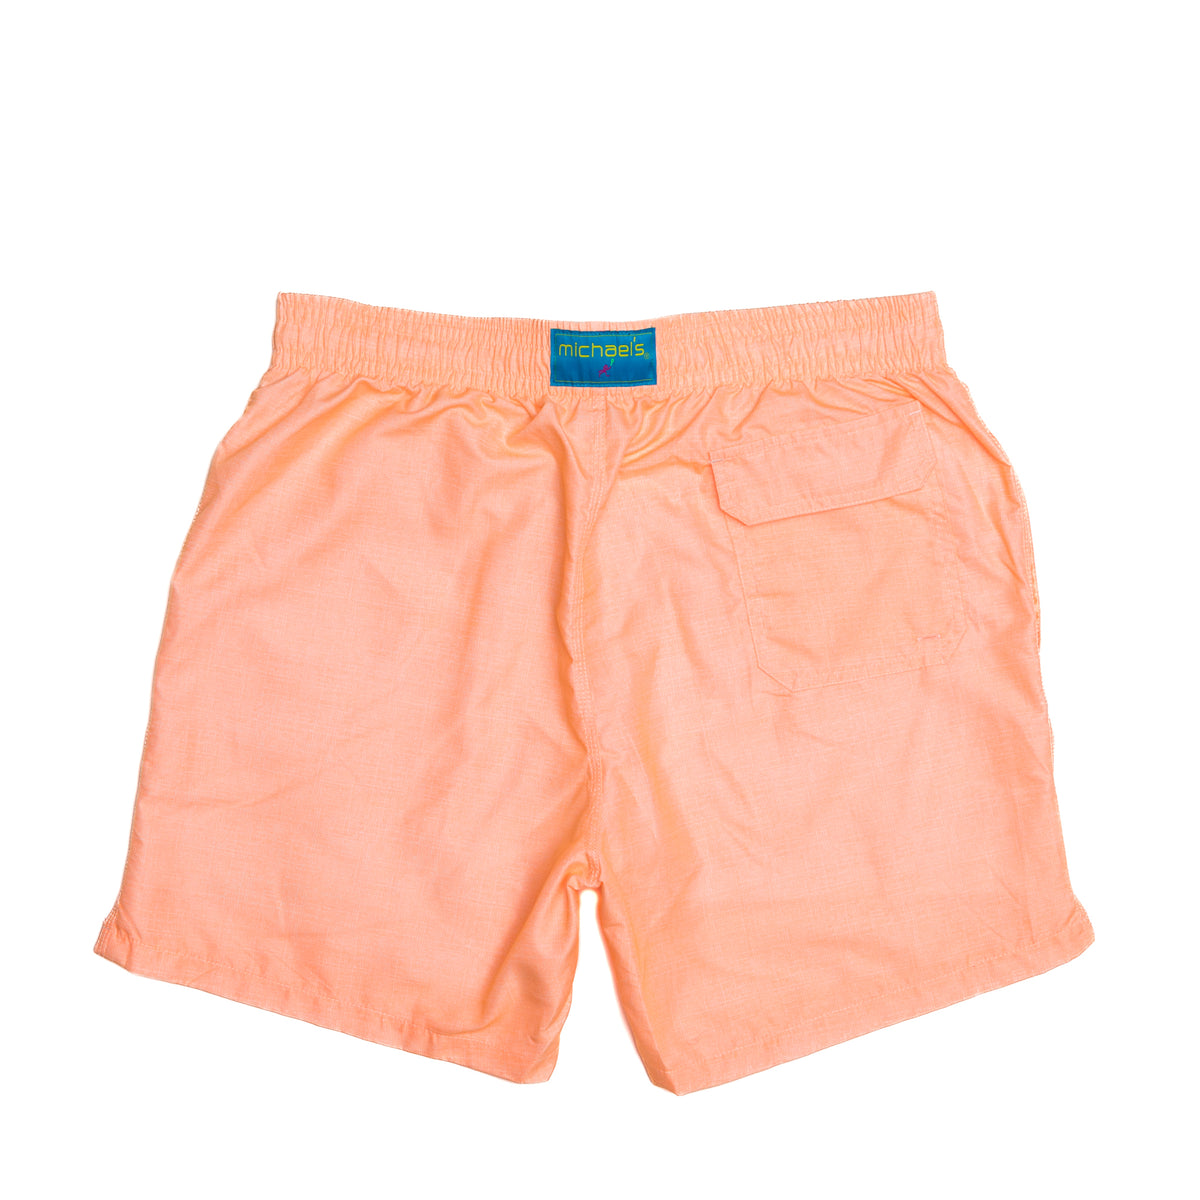 Orange linen swim trunks for boys, back view